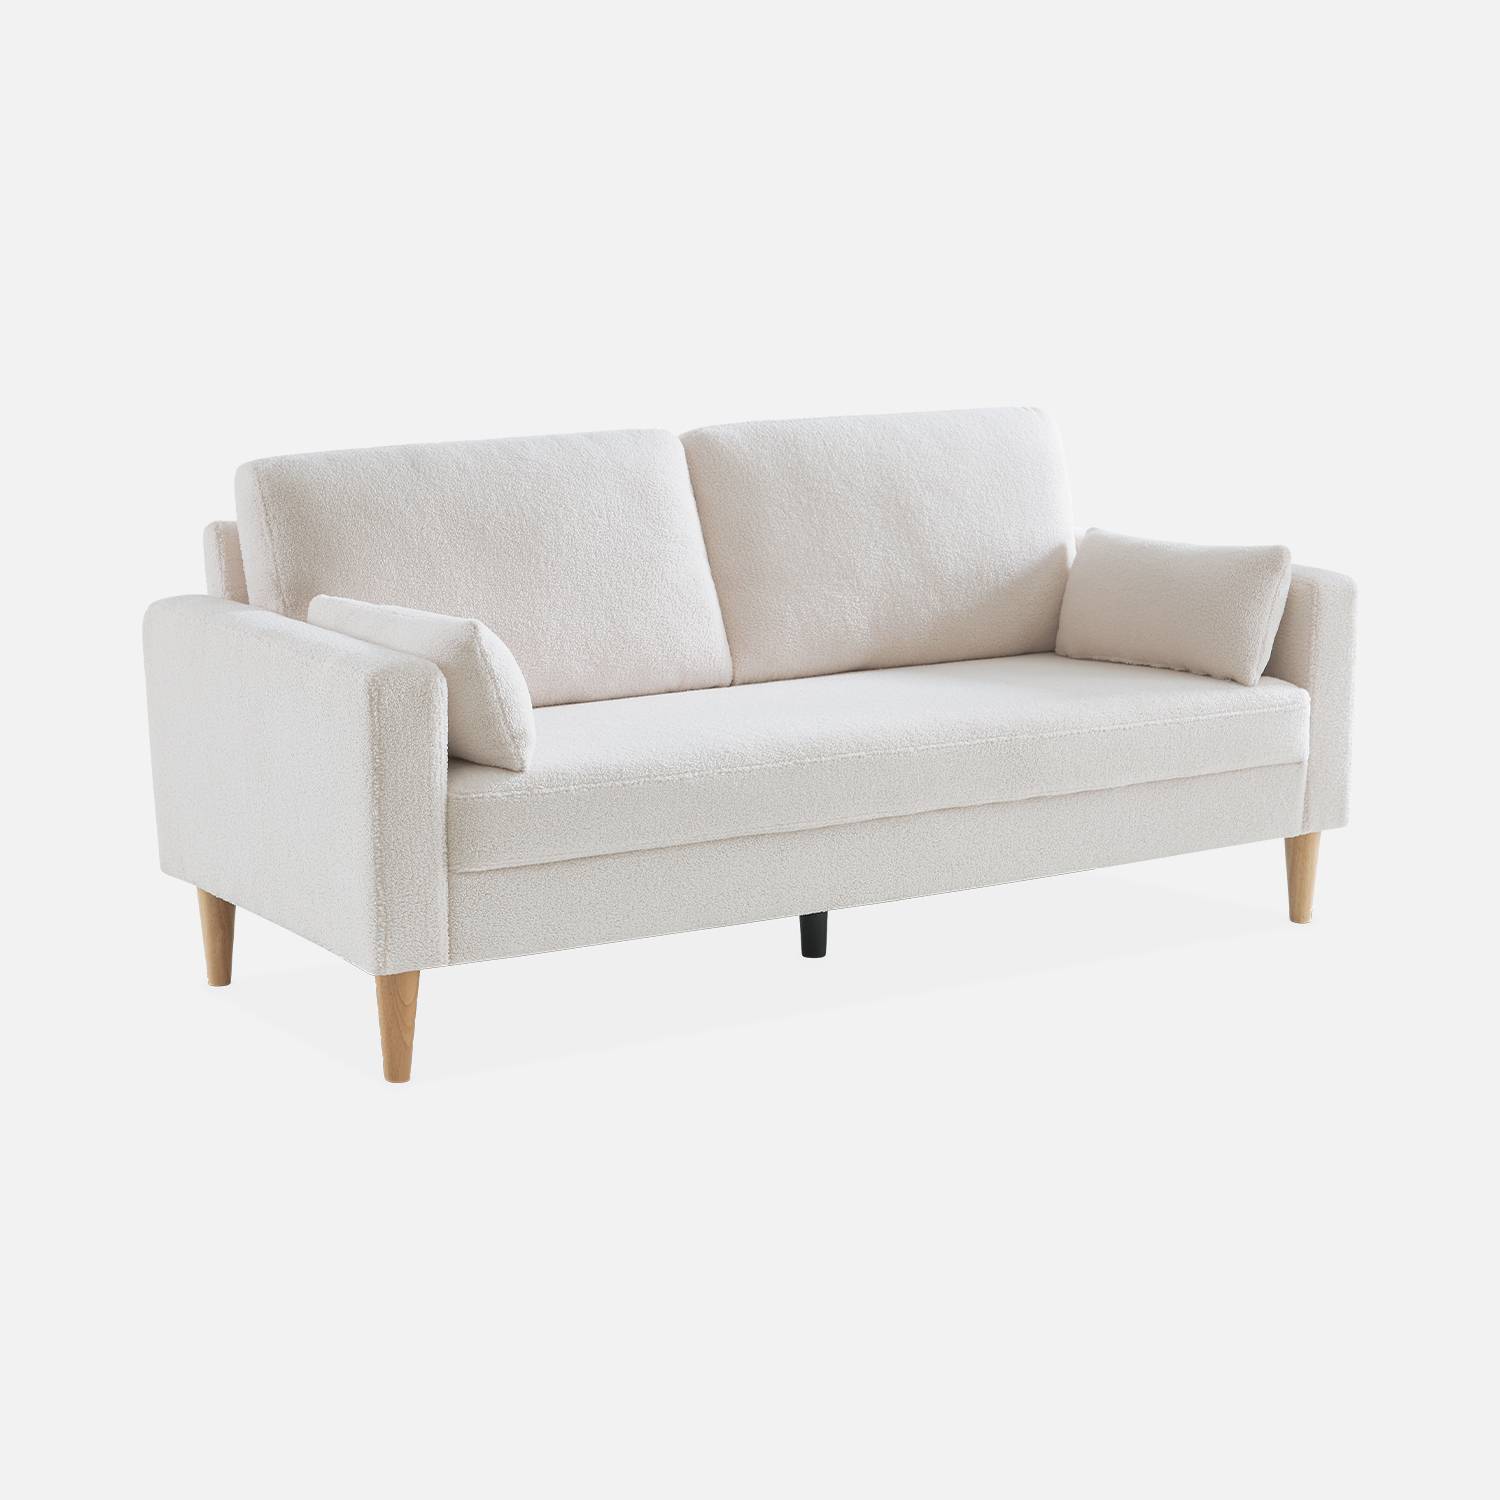 Driezits sofa van wit boucléstof - Bjorn - 3-zits bank met houten poten, scandinavische stijl  ,sweeek,Photo3